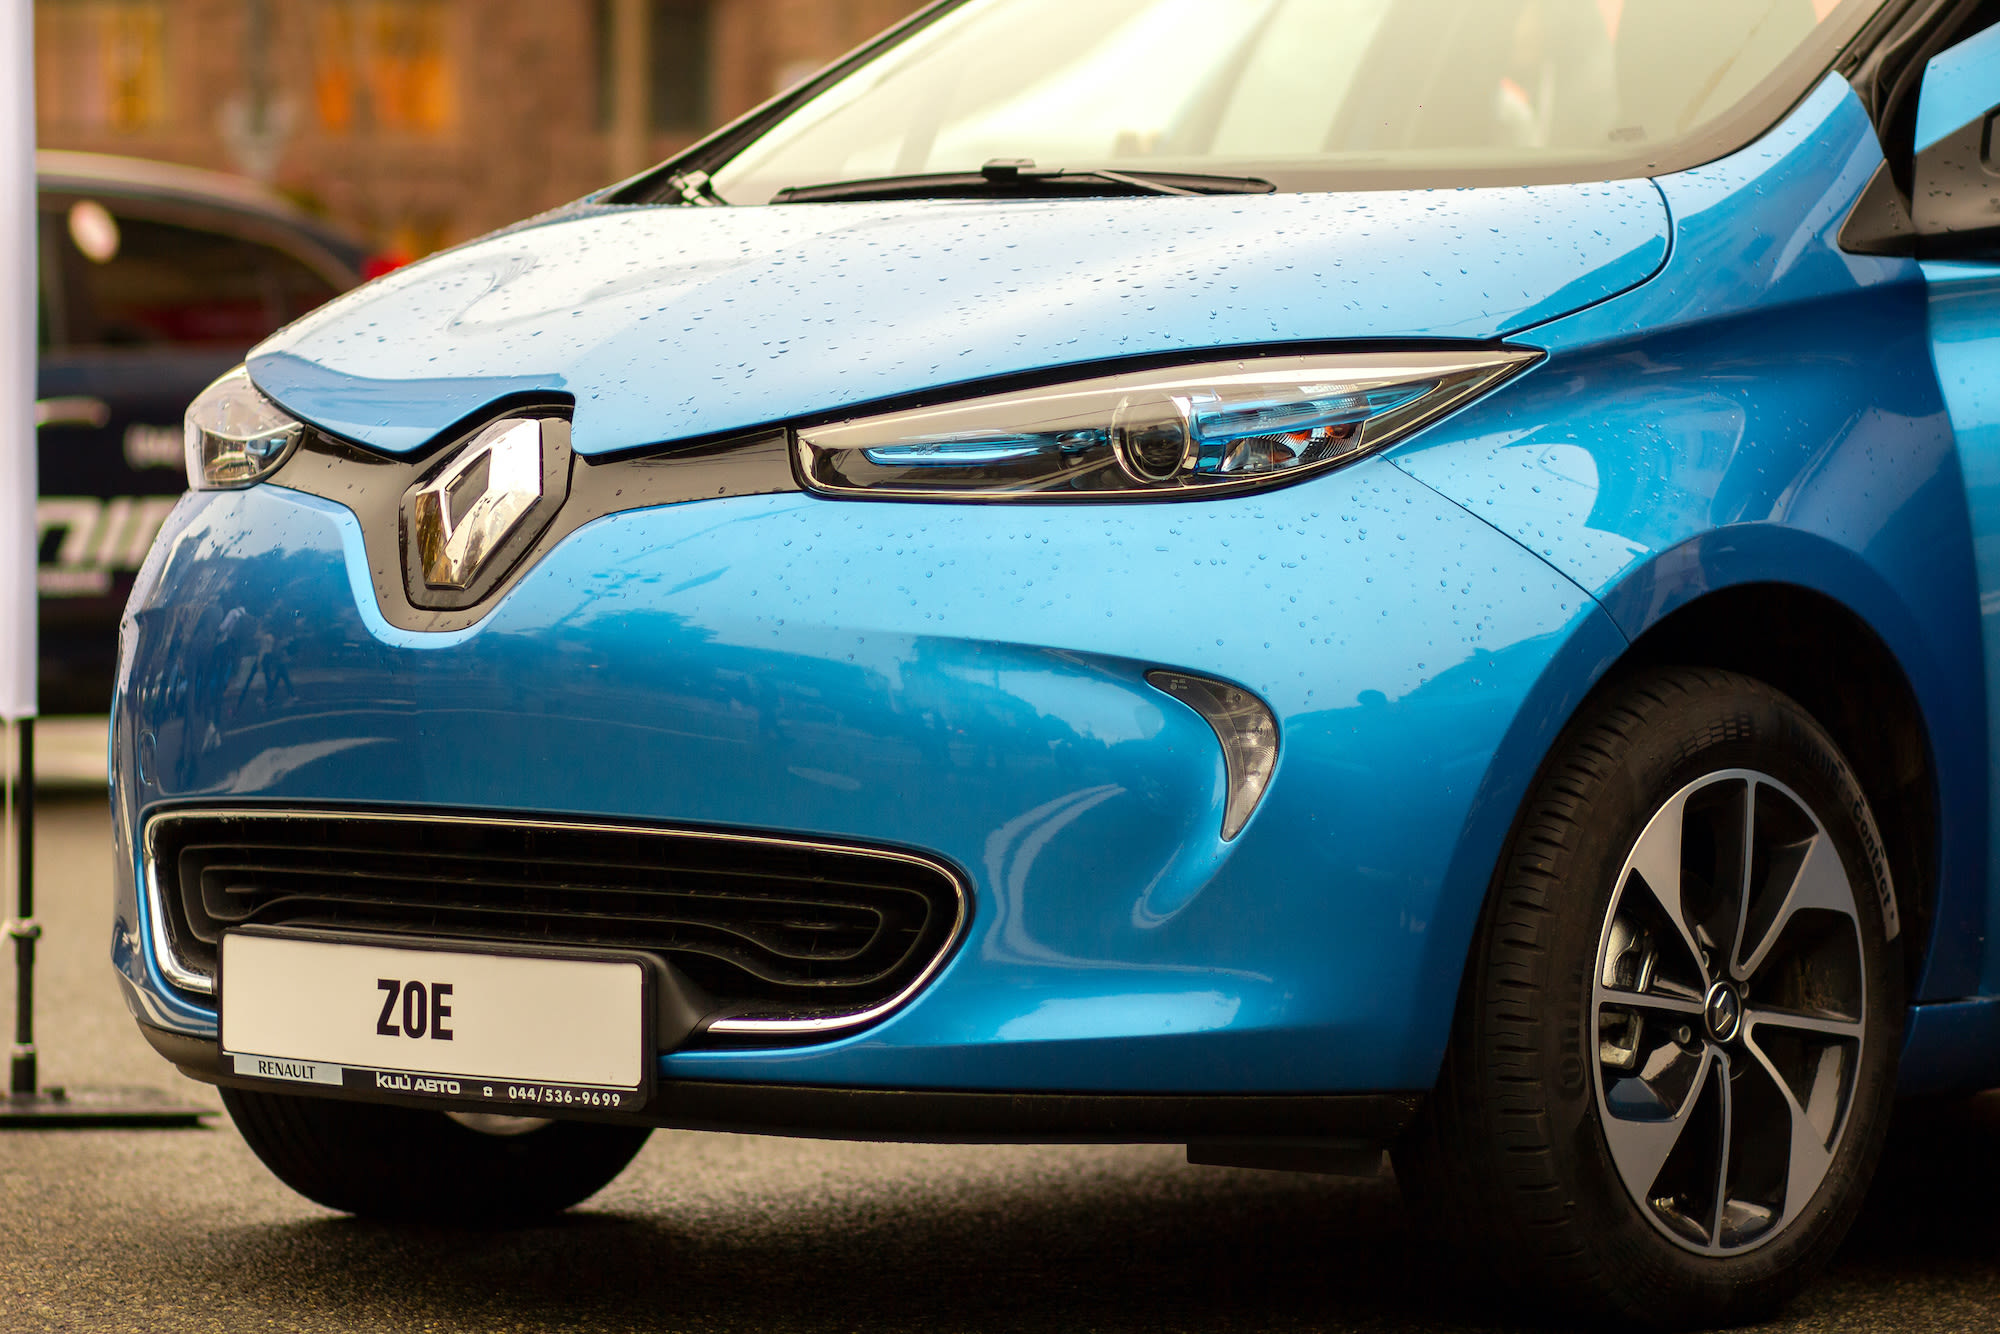 Renault Zoe 2017 blauwe uitvoering